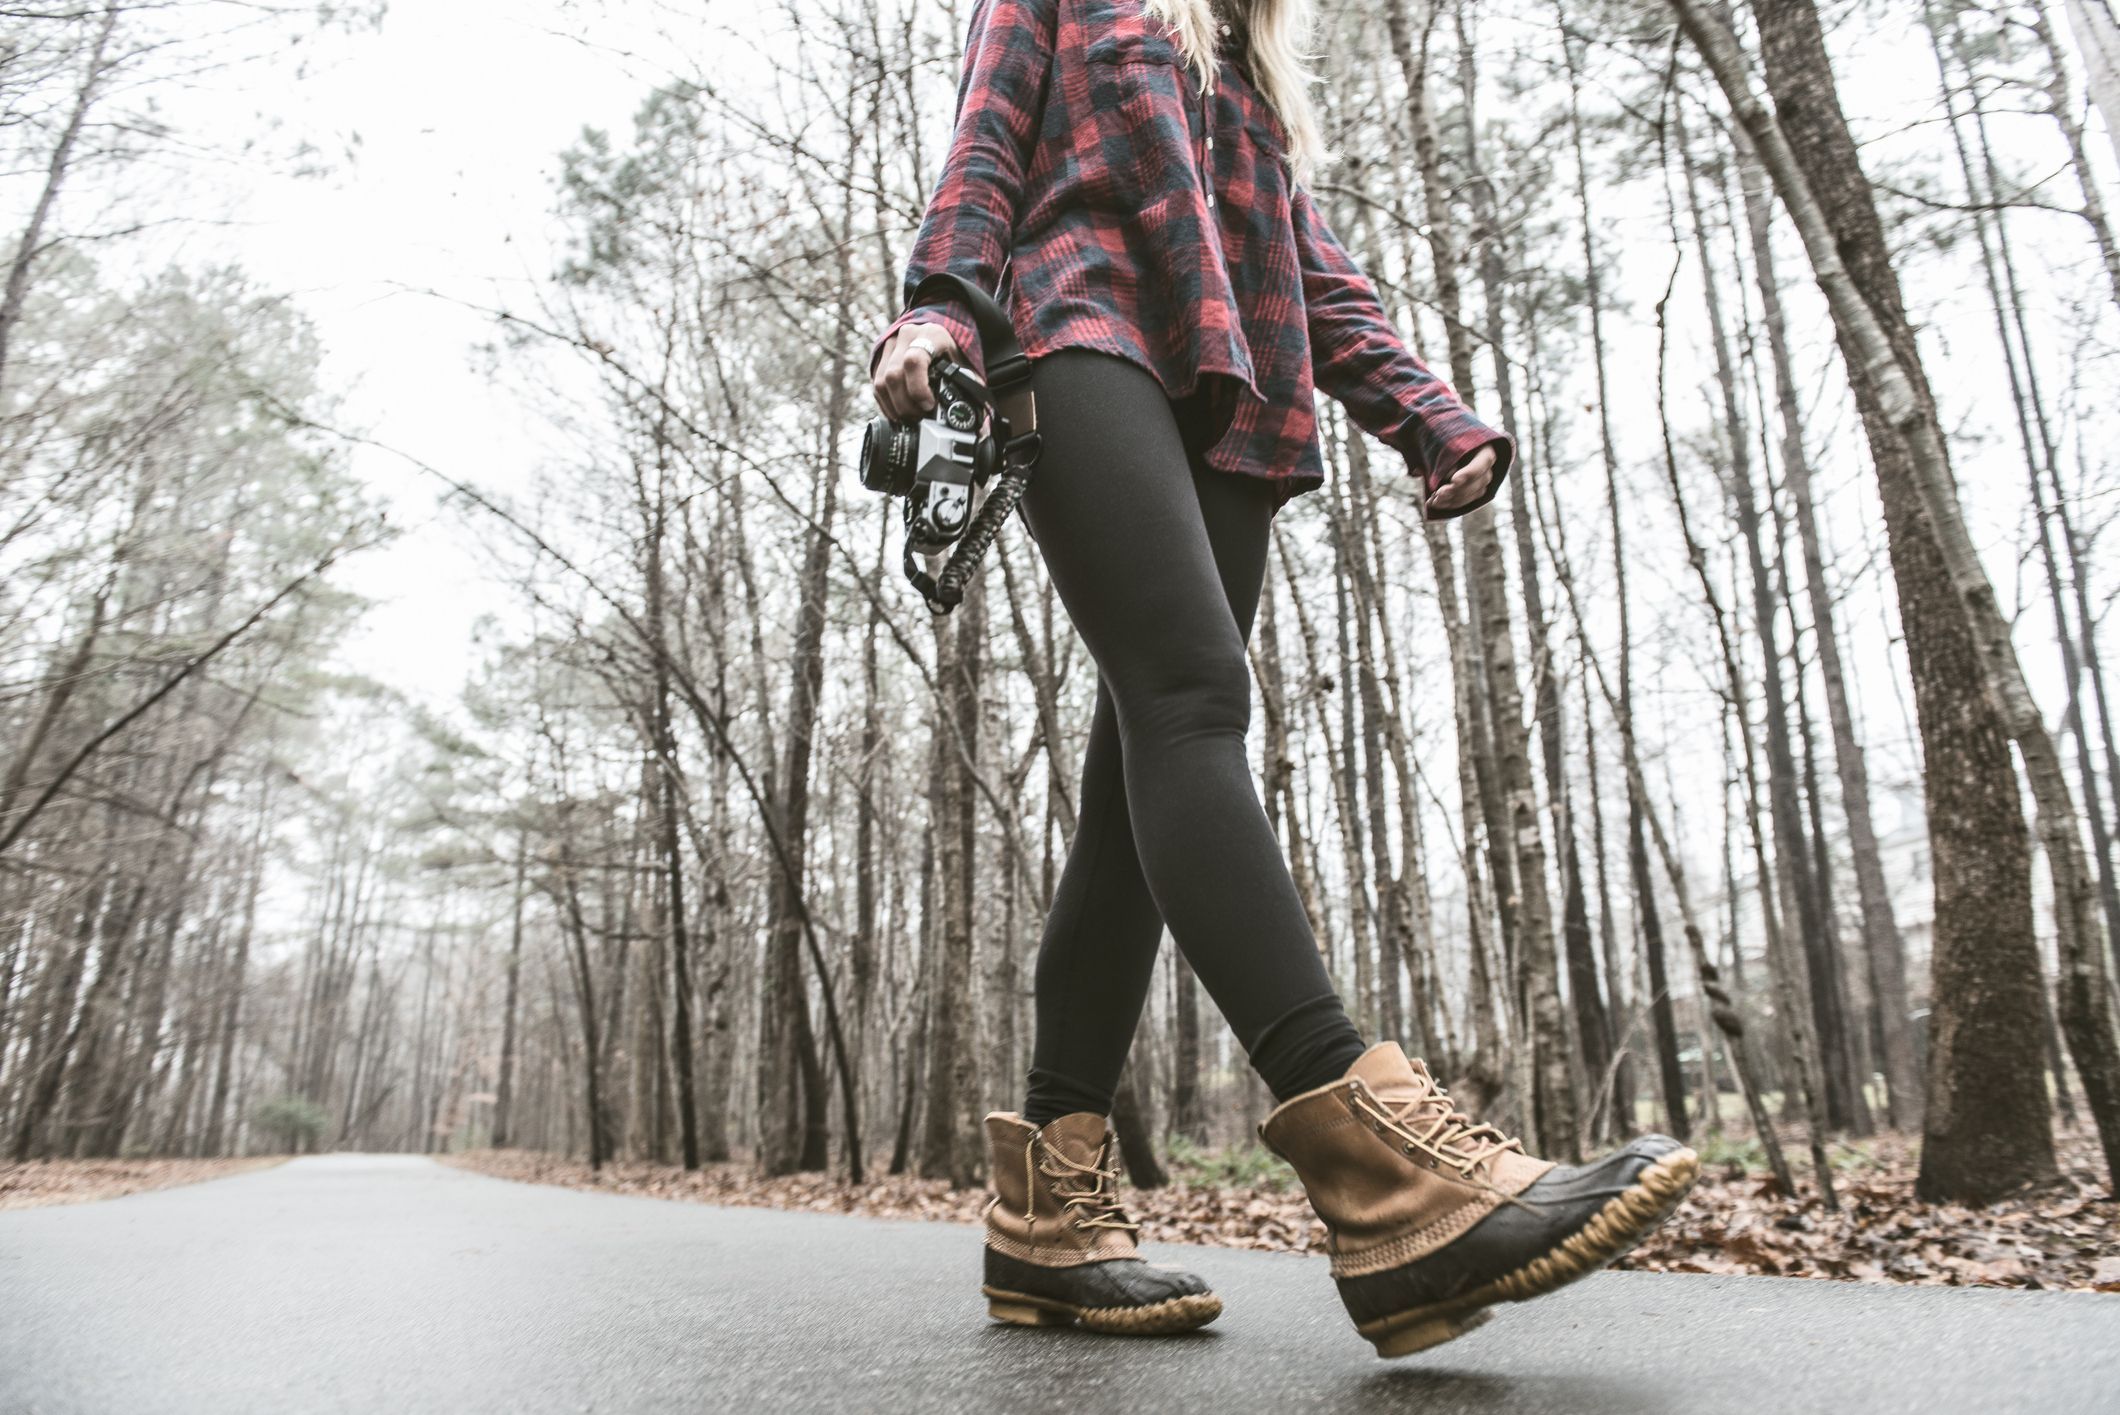 Women Winter Leggings & Warm Leggings for Comfort Style